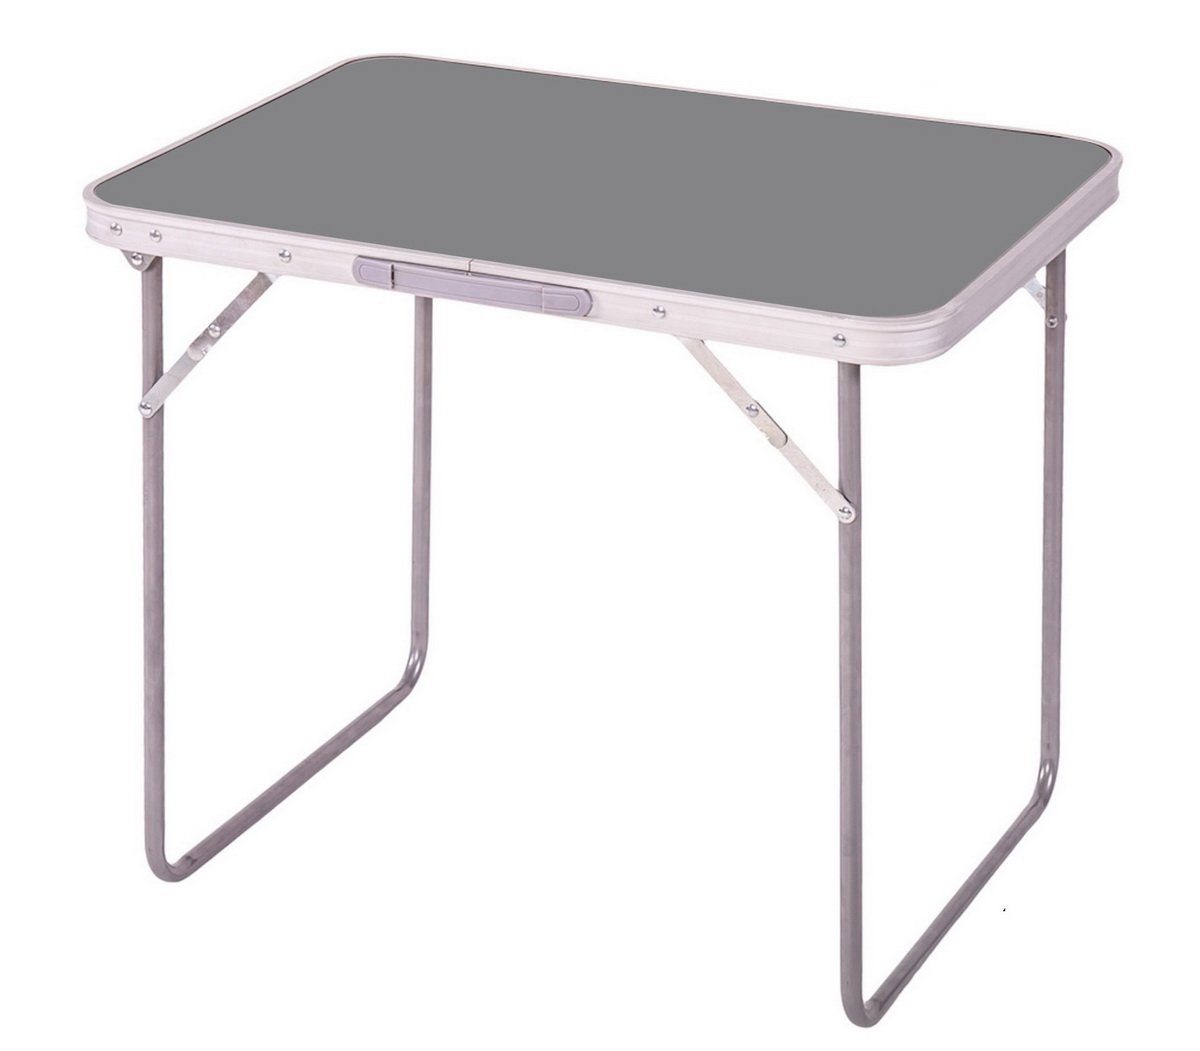 Camping-Tisch grau klappbarer Sunnydays Partytisch Picknicktisch Campingtisch